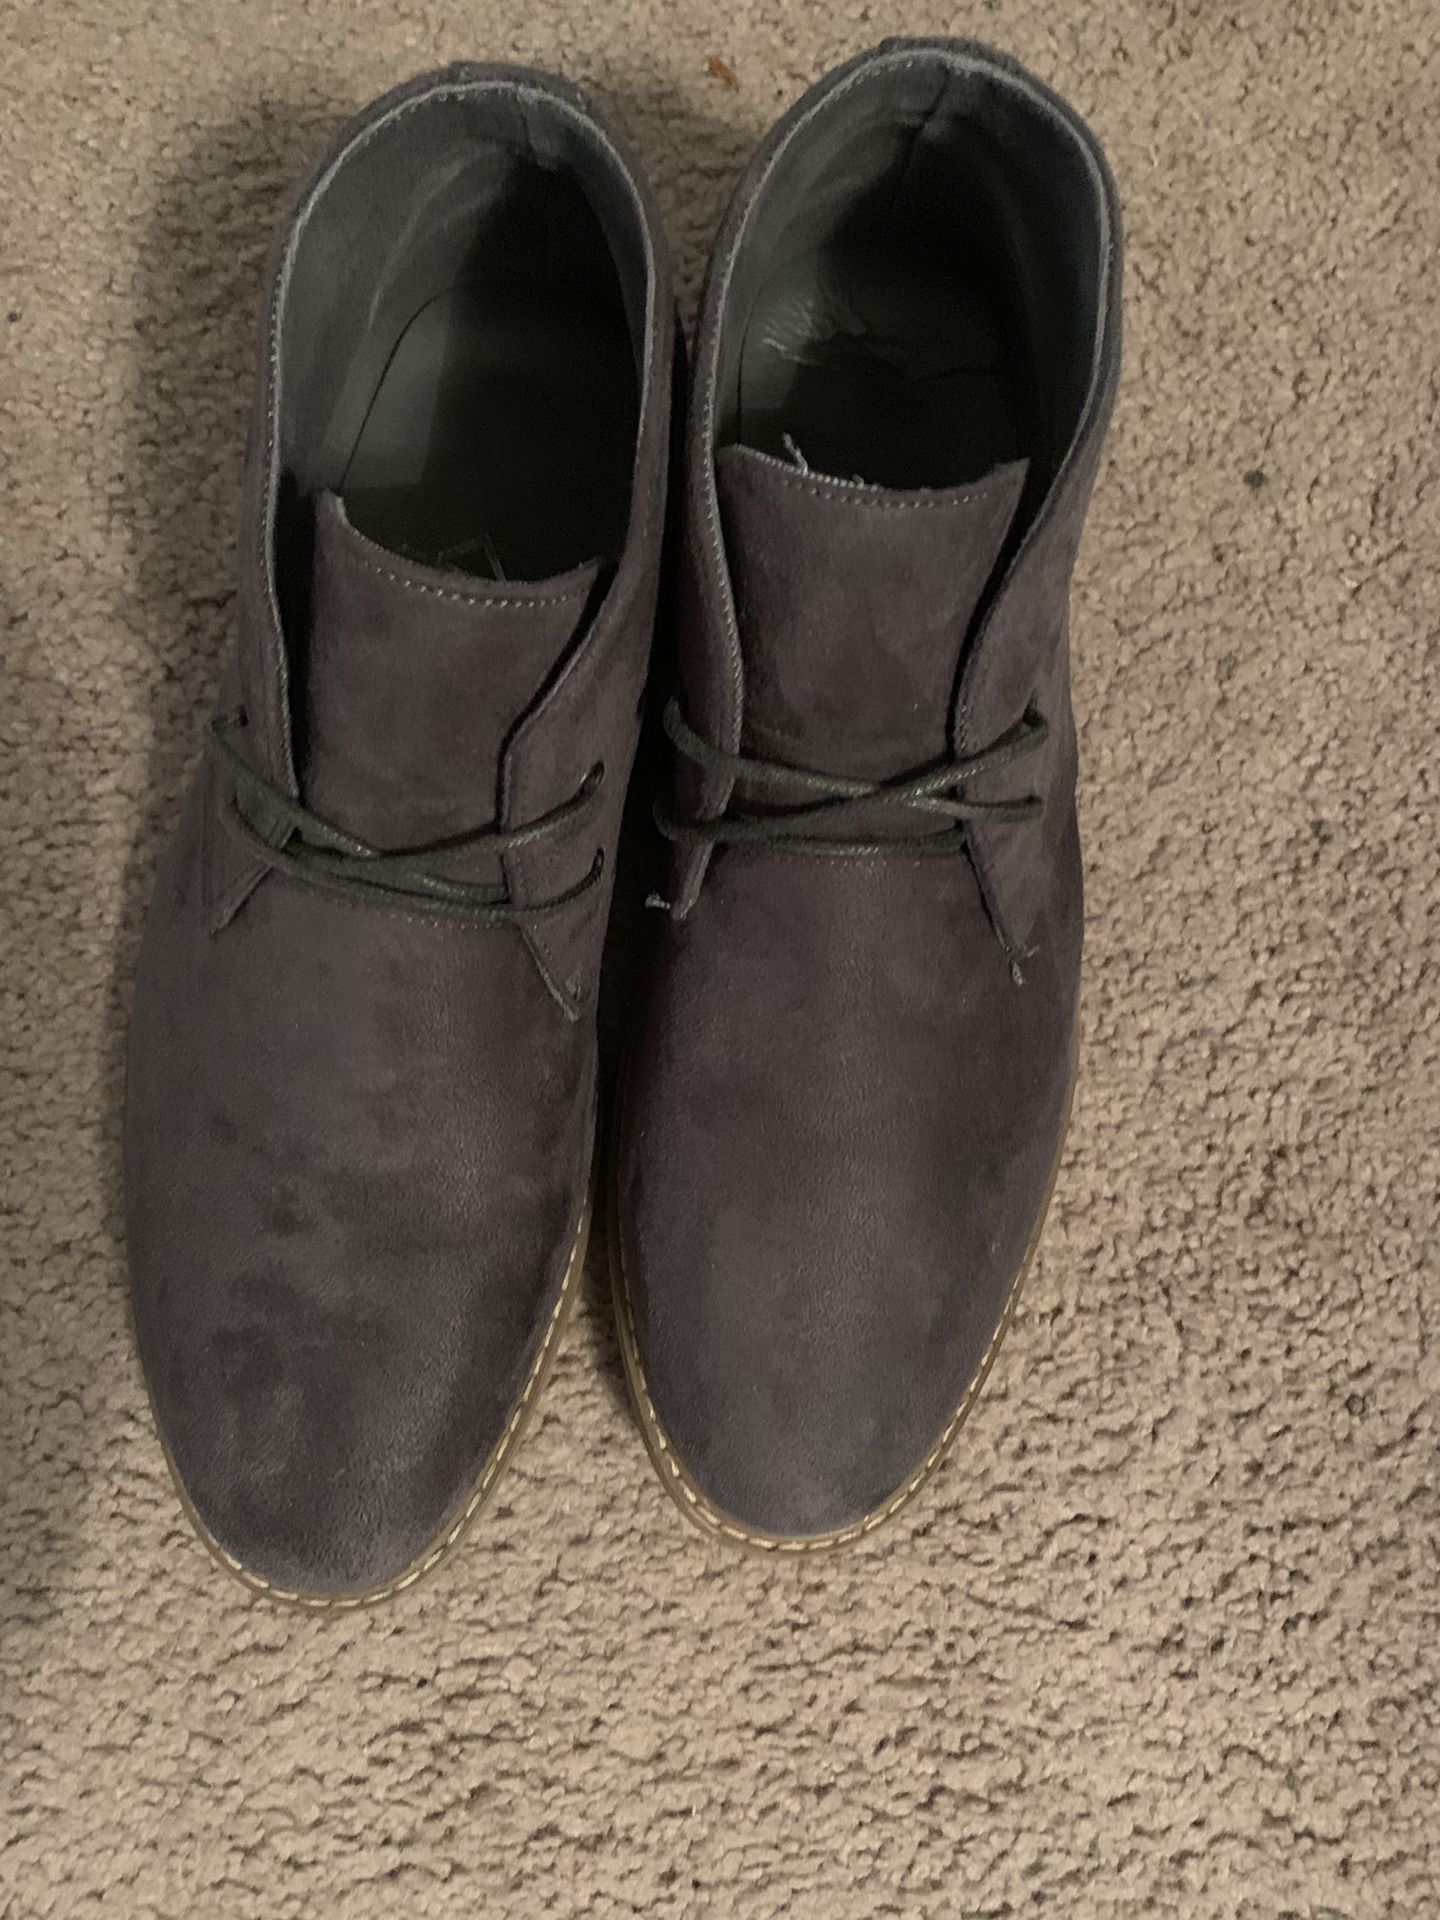 10.5 Gray Chukka Boots